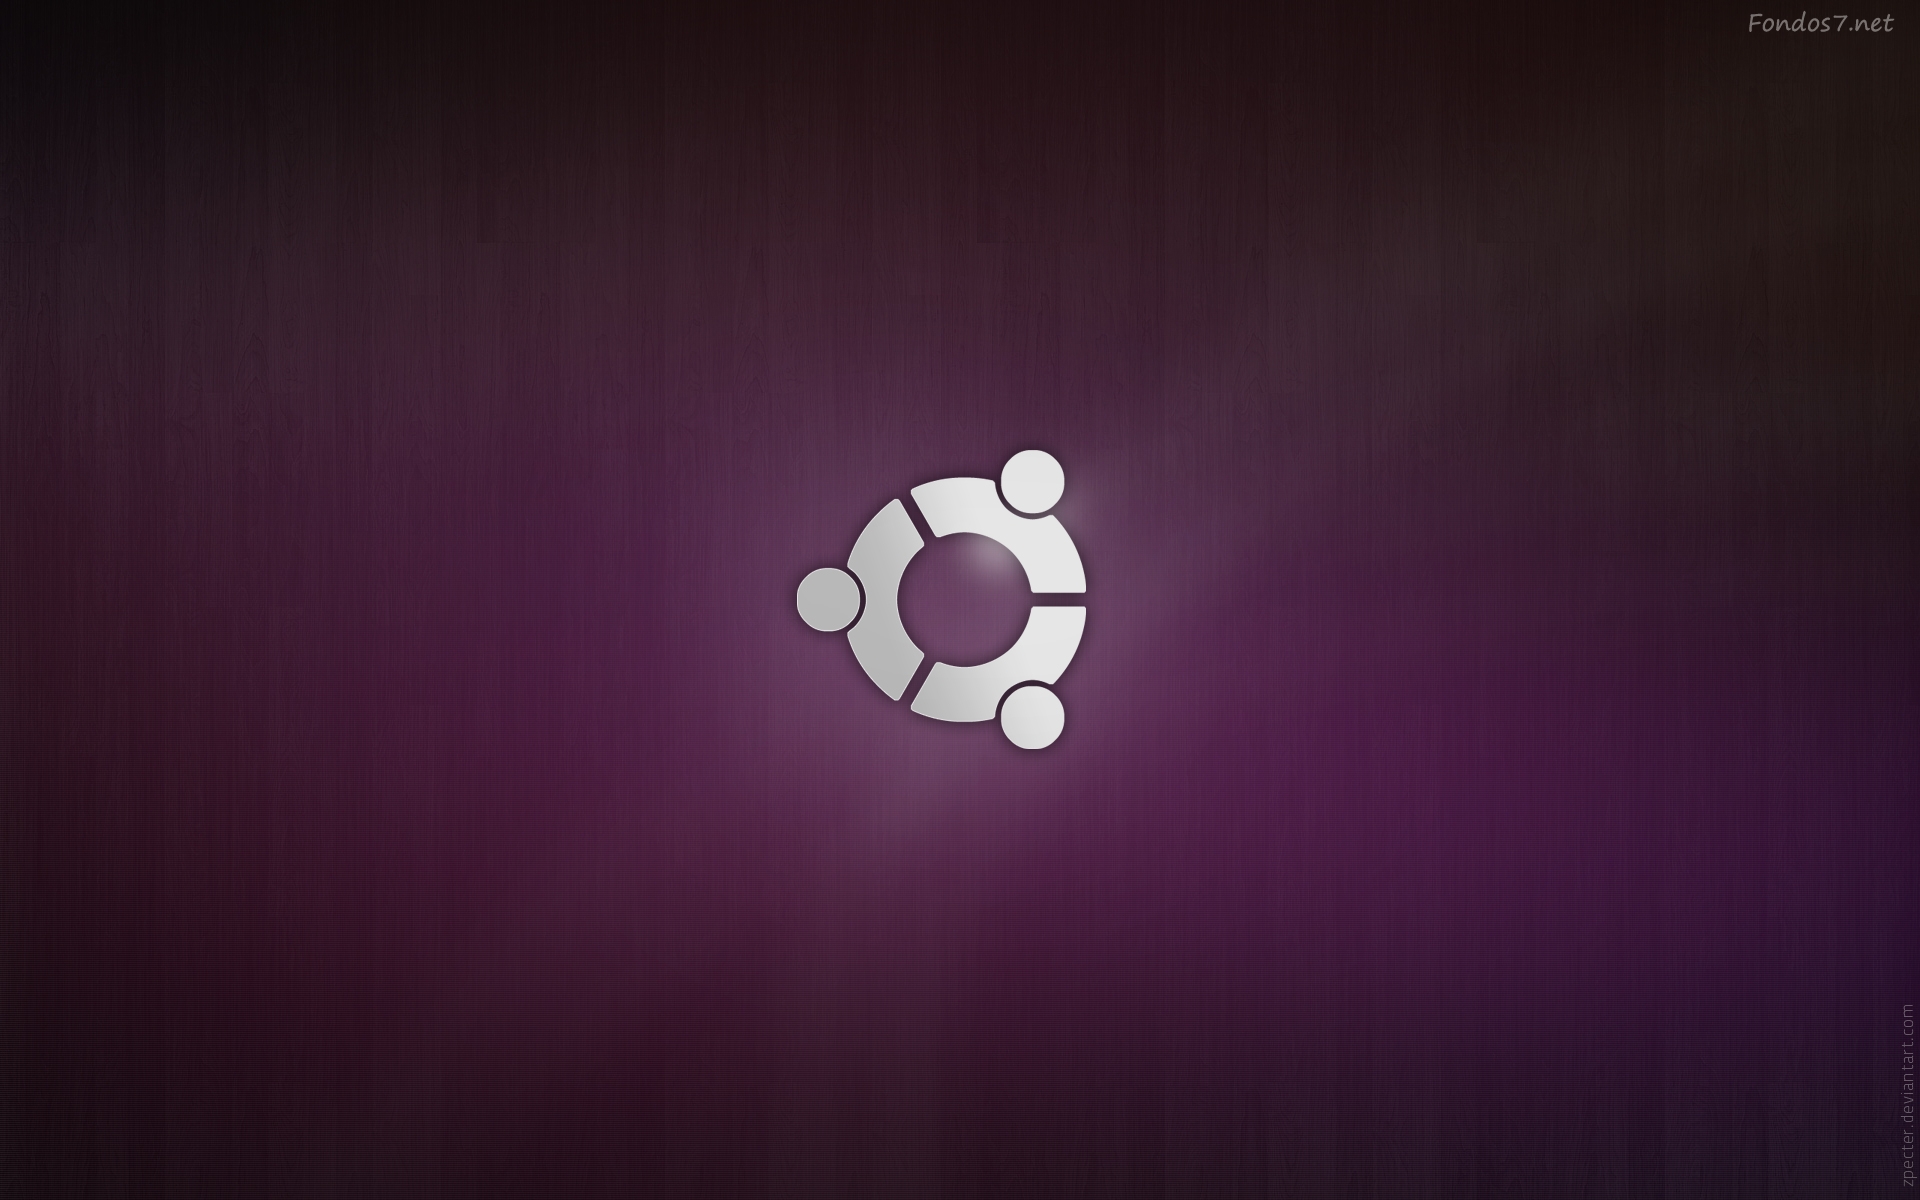 Final Linux Ubuntu Wallpaper Widescreen Fondos7